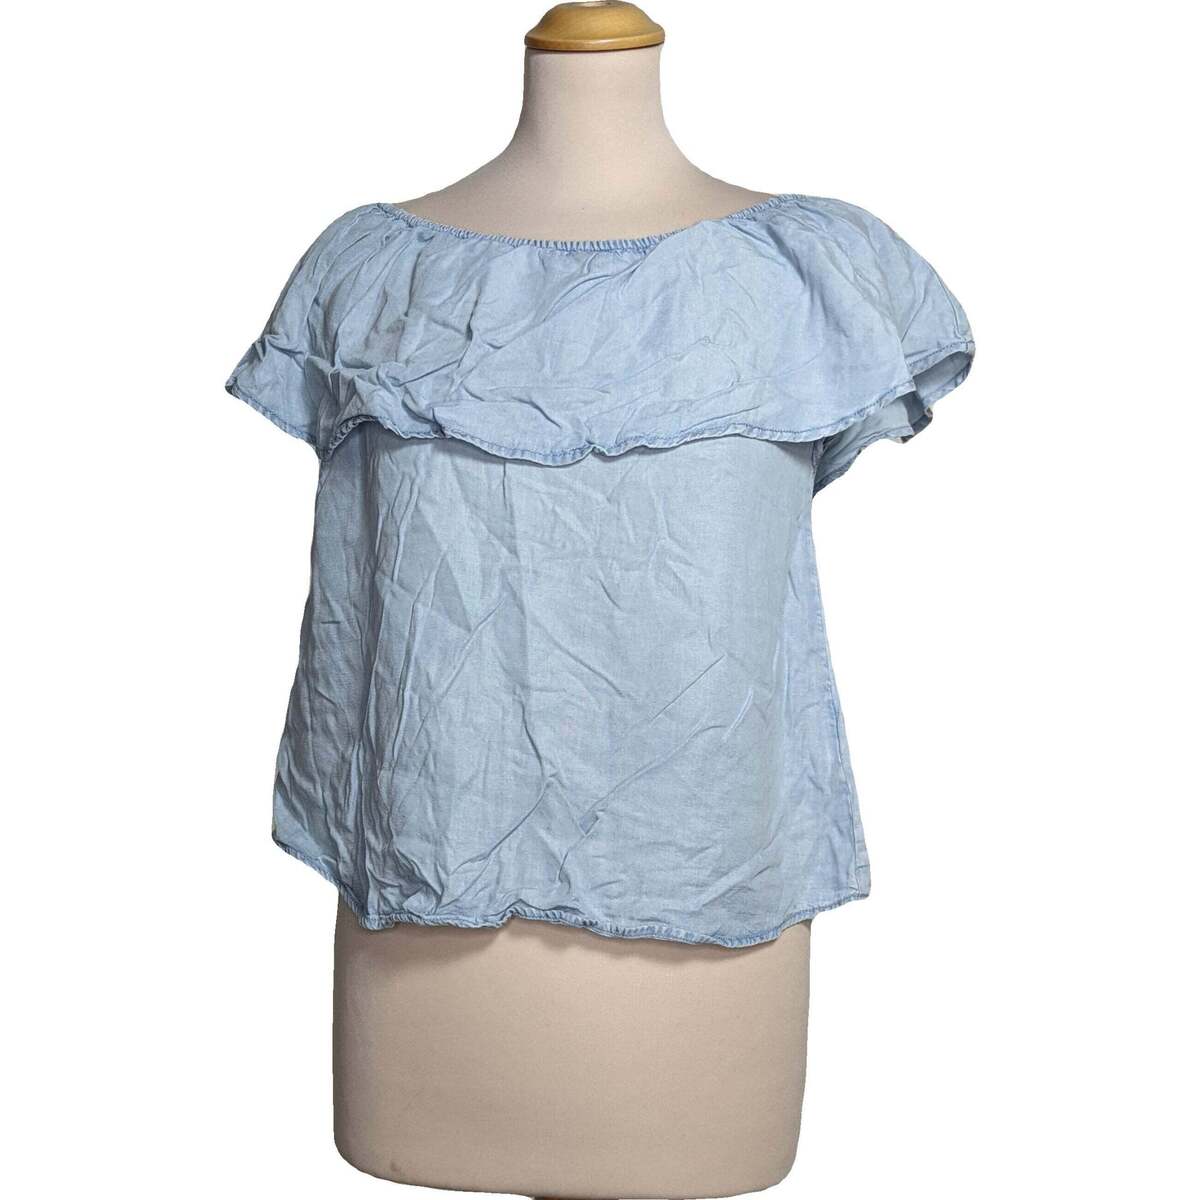 Vêtements Femme Jack & Jones Pimkie blouse  36 - T1 - S Bleu Bleu